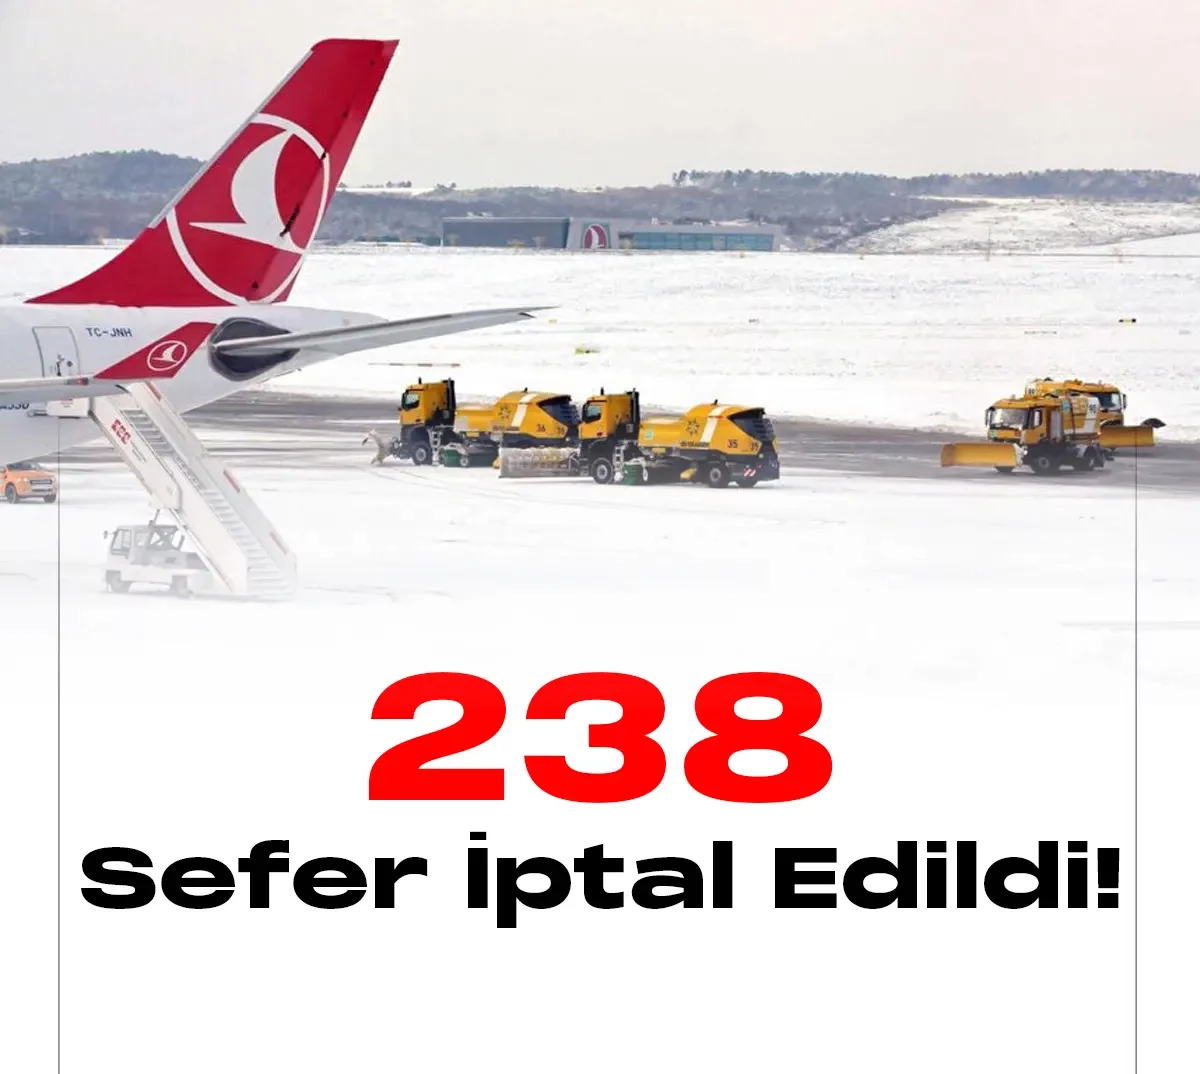 Türk Hava Yolları (THY) olumsuz hava koşulları nedeniyle 4-5 Şubat 2023 tarihli 238 seferini iptal ettiğini duyurdu.Türk Hava Yolları (THY) olumsuz hava koşulları nedeniyle 4-5 Şubat 2023 tarihli 238 seferini iptal ettiğini duyurdu.